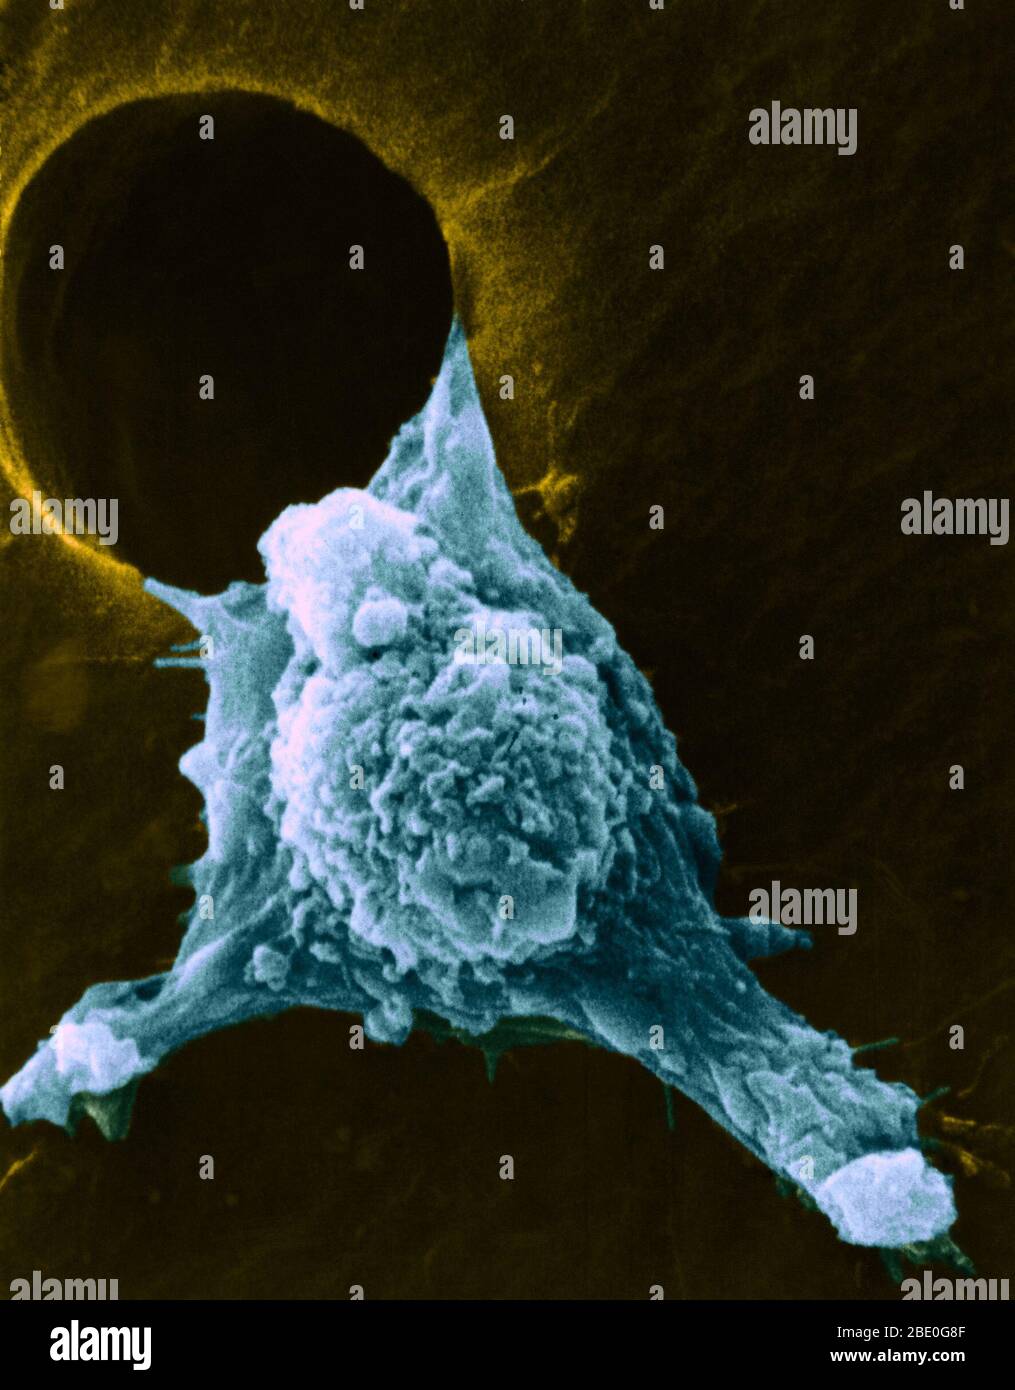 Migrierende Krebszelle. Farbige Rasterelektronenmikroskopie (SEM) einer kultivierten Krebszelle, die sich durch ein Loch in einem Stützfilm bewegt (metastasiert). Zahlreiche Pseudopodien (arm-ähnlich), Fillipodien (fadenähnlich) und Oberflächenblumpen (Klumpen) sind zu sehen. Diese Eigenschaften sind charakteristisch für hochmobile Zellen und ermöglichen Krebszellen, sich schnell um den Körper zu verbreiten und in andere Organe und Gewebe einzudringen (Metastasen). Stockfoto